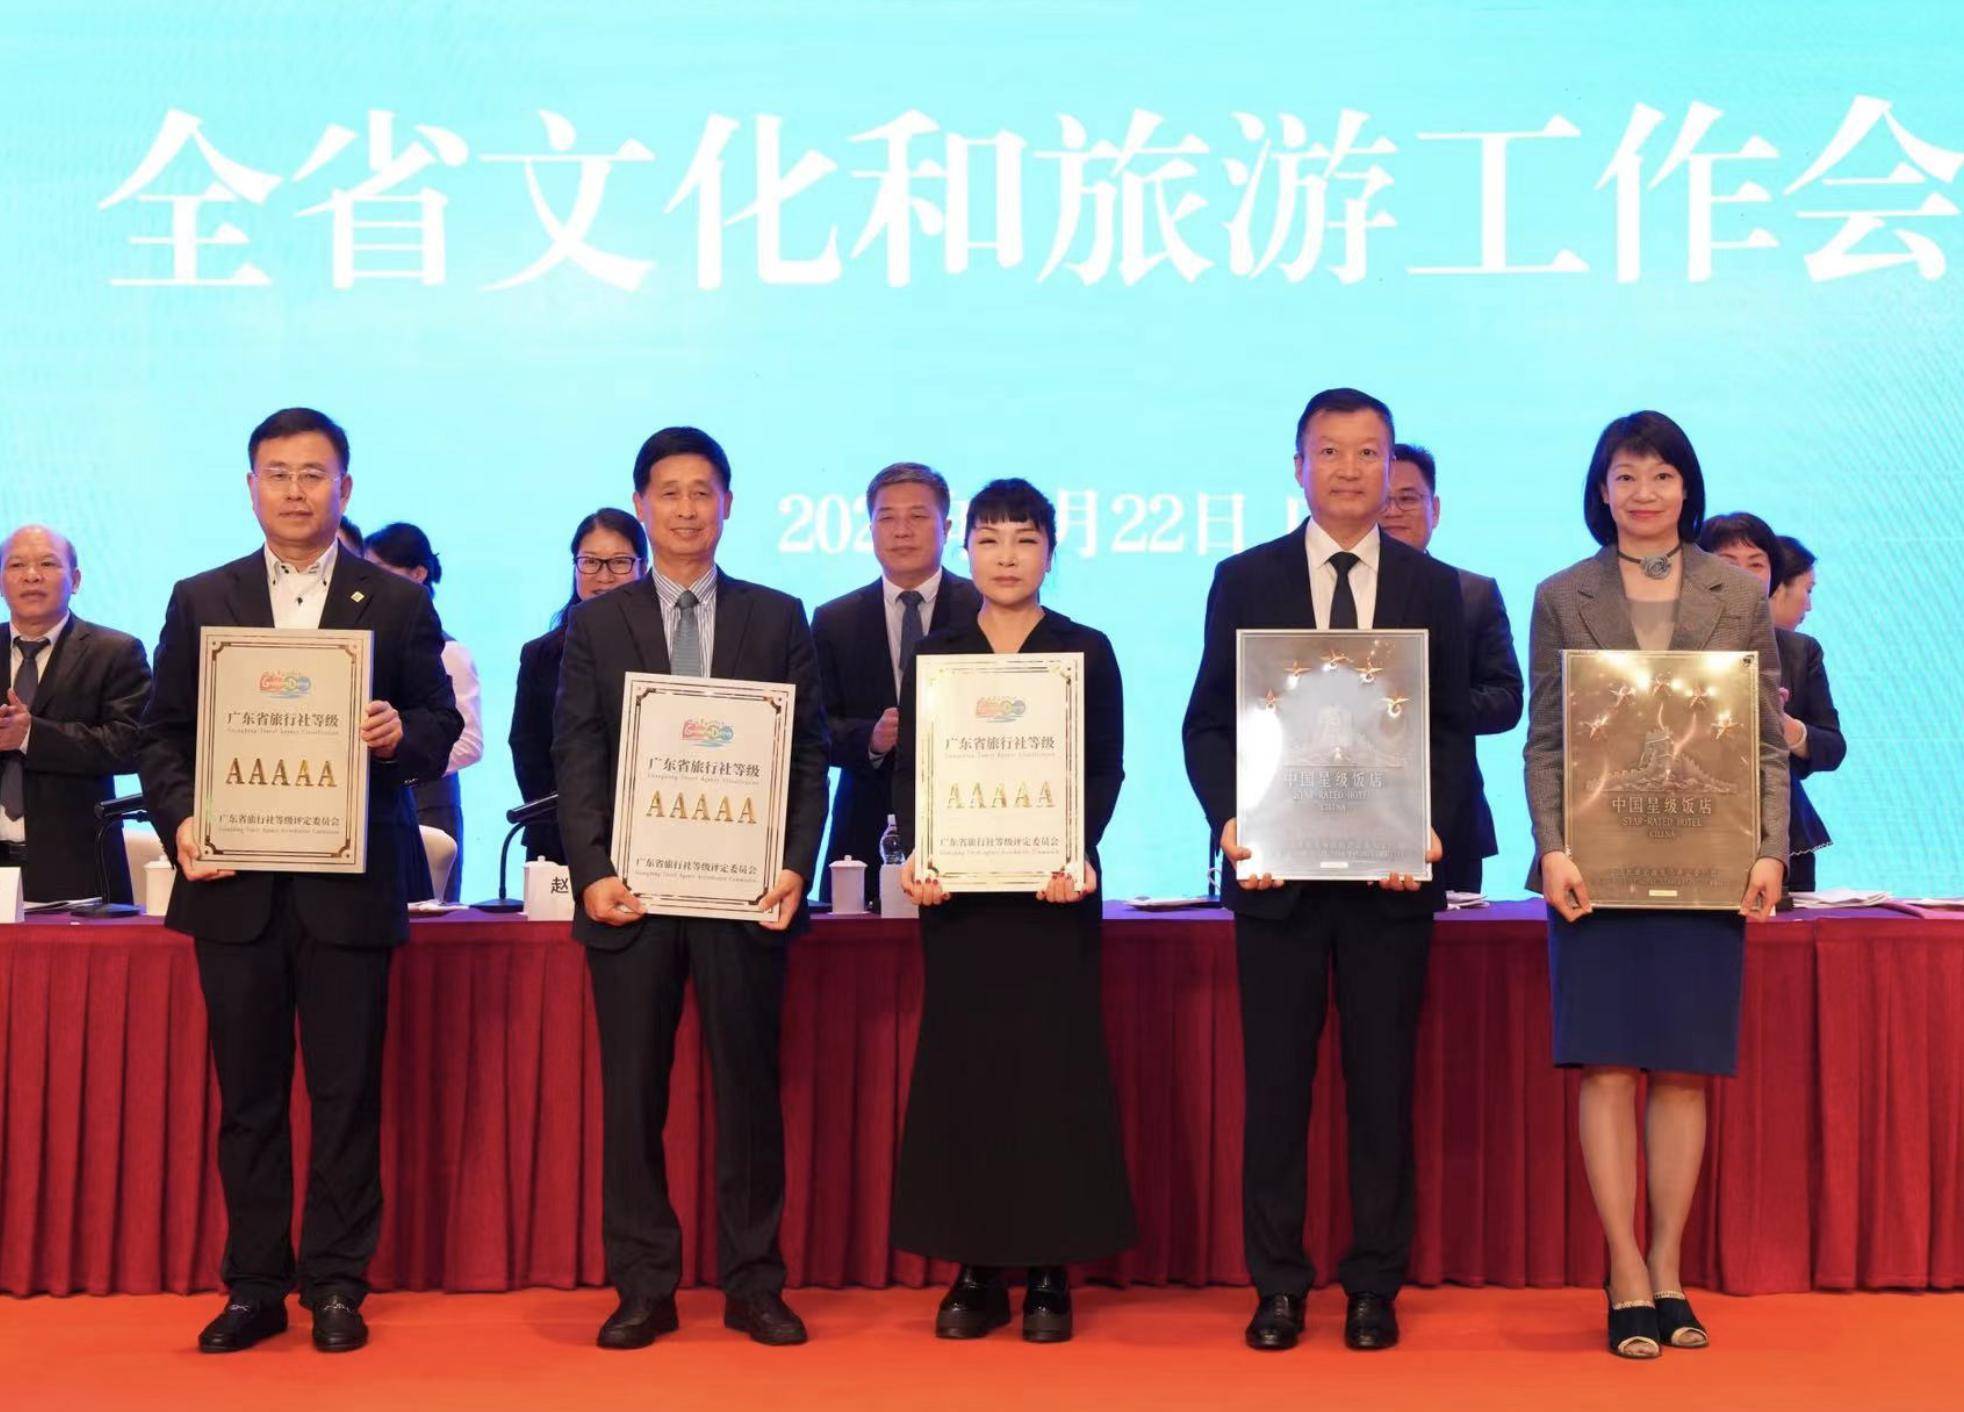 旅行:三家旅行社获颁“广东省首批5A级旅行社”牌匾